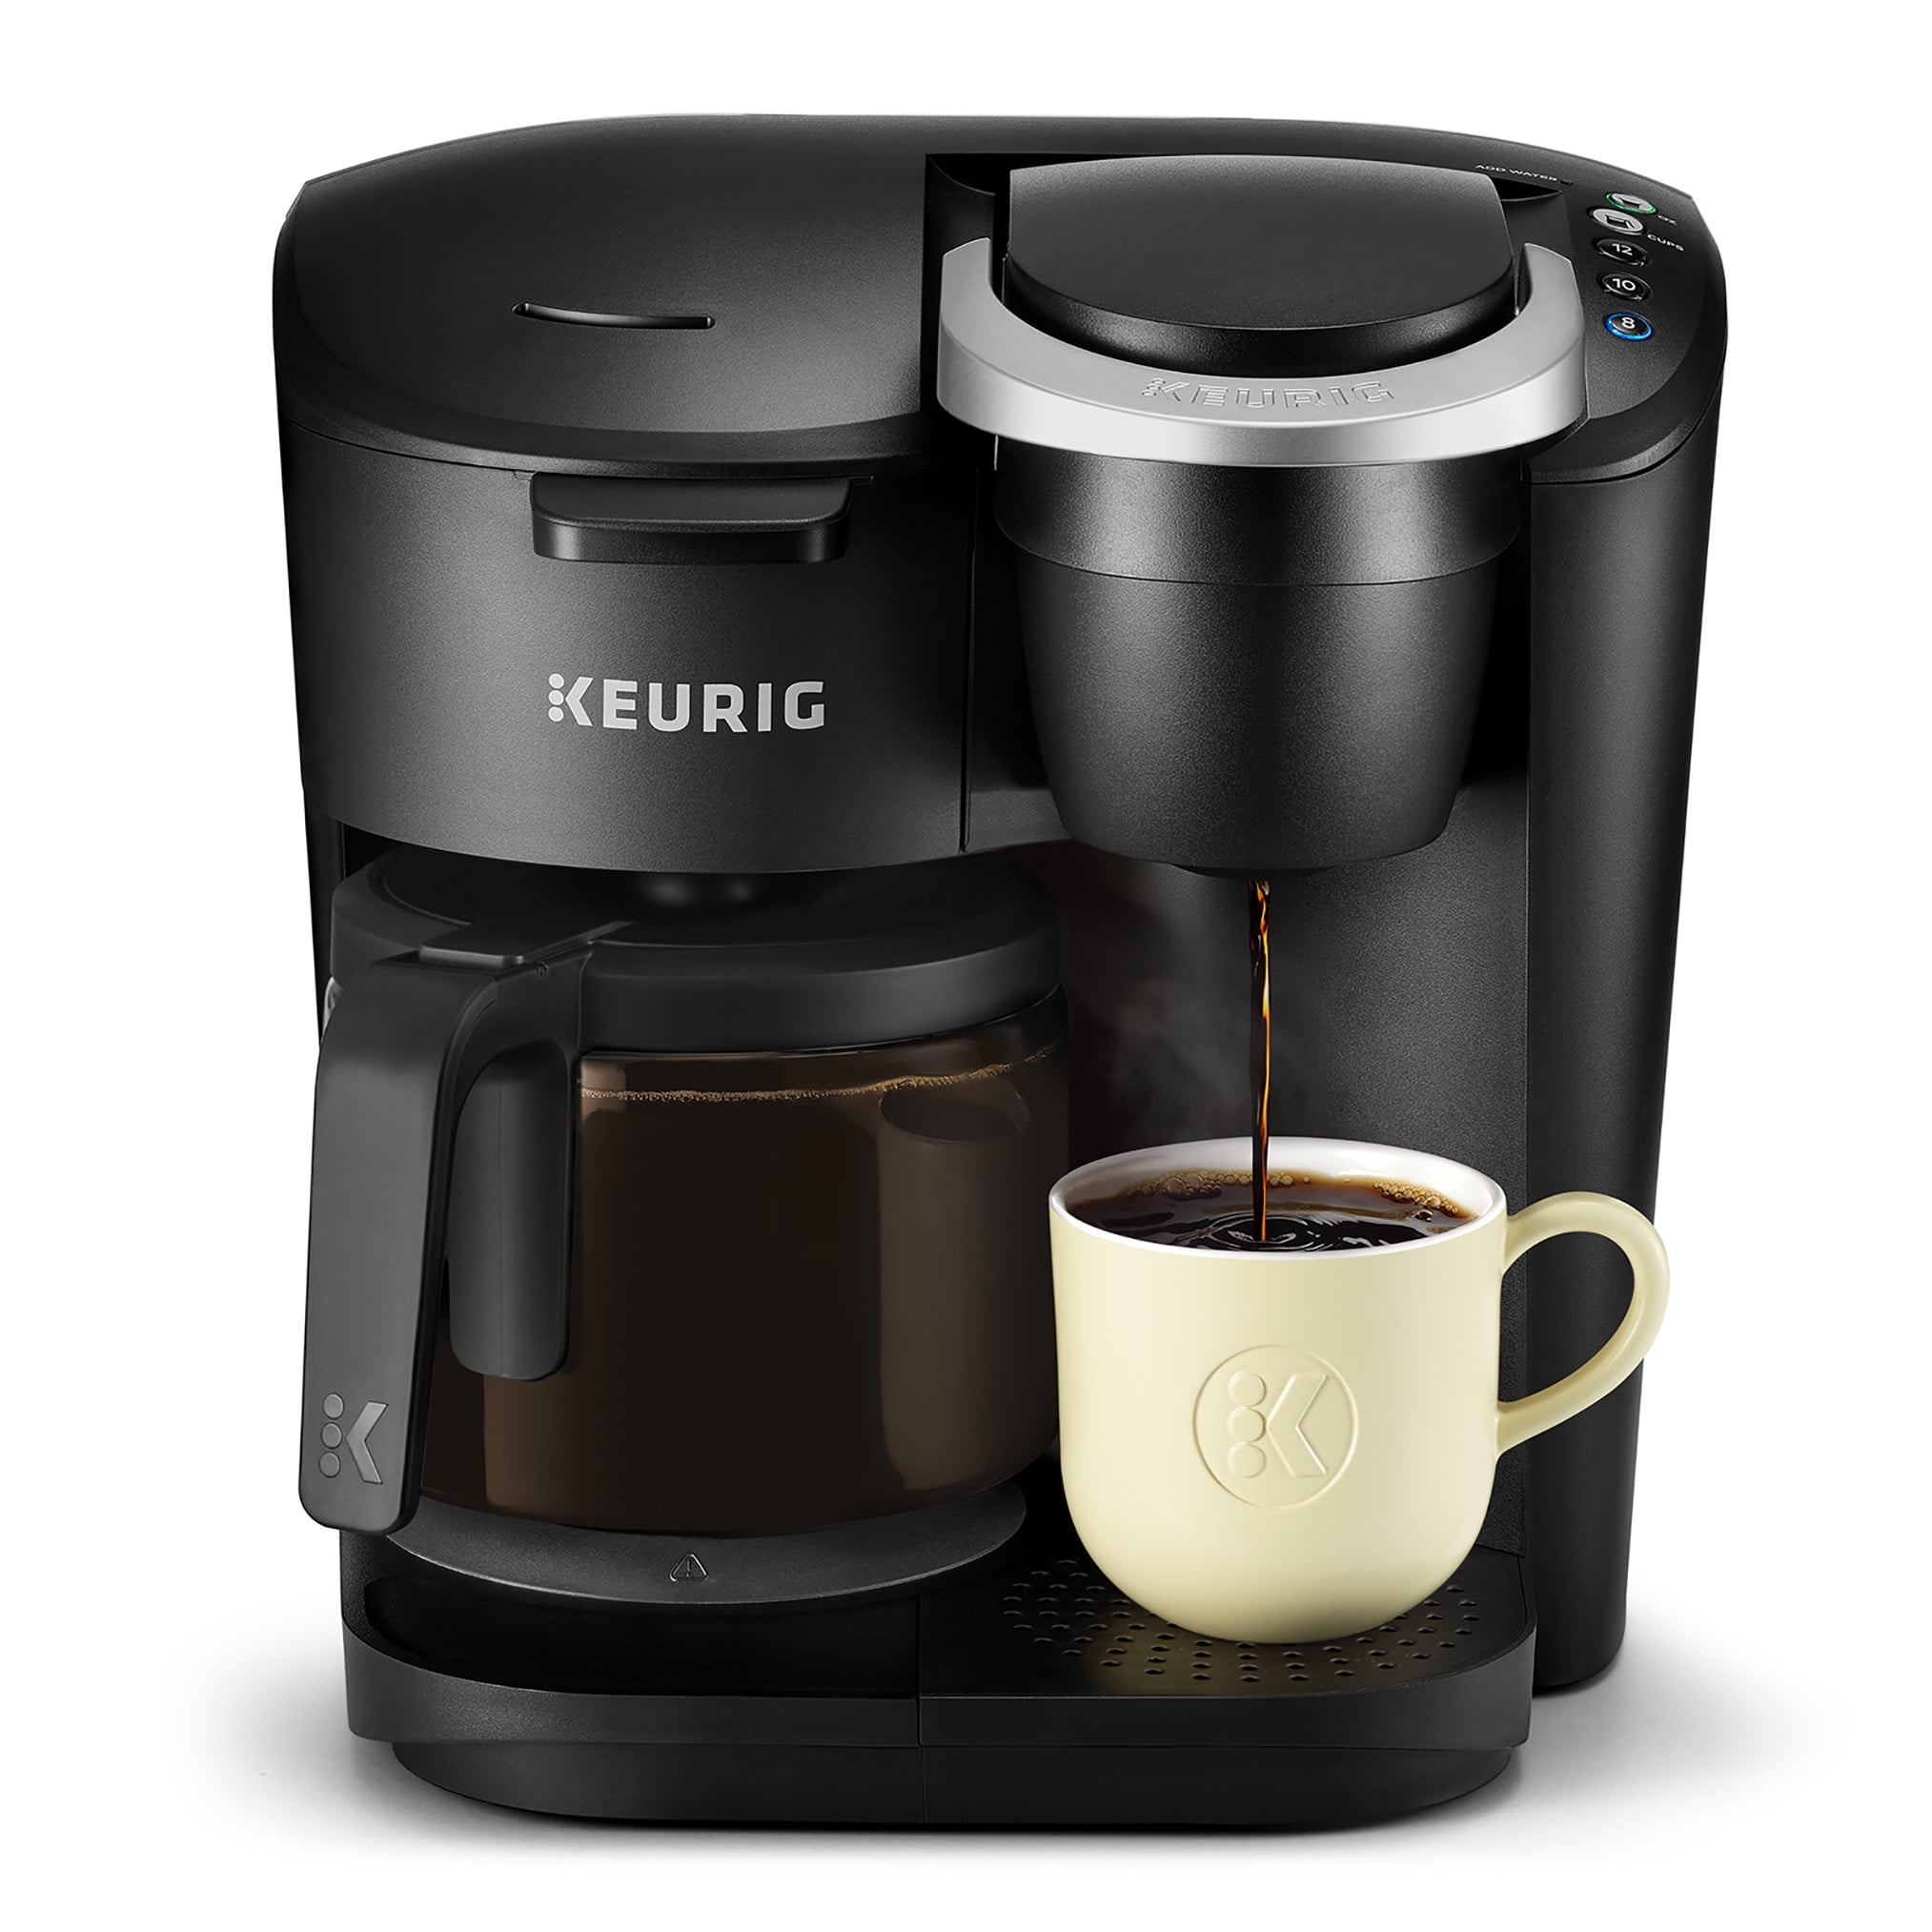 Keurig K-Duo Single-Serve & Carafe Coffee Maker Black for sale online